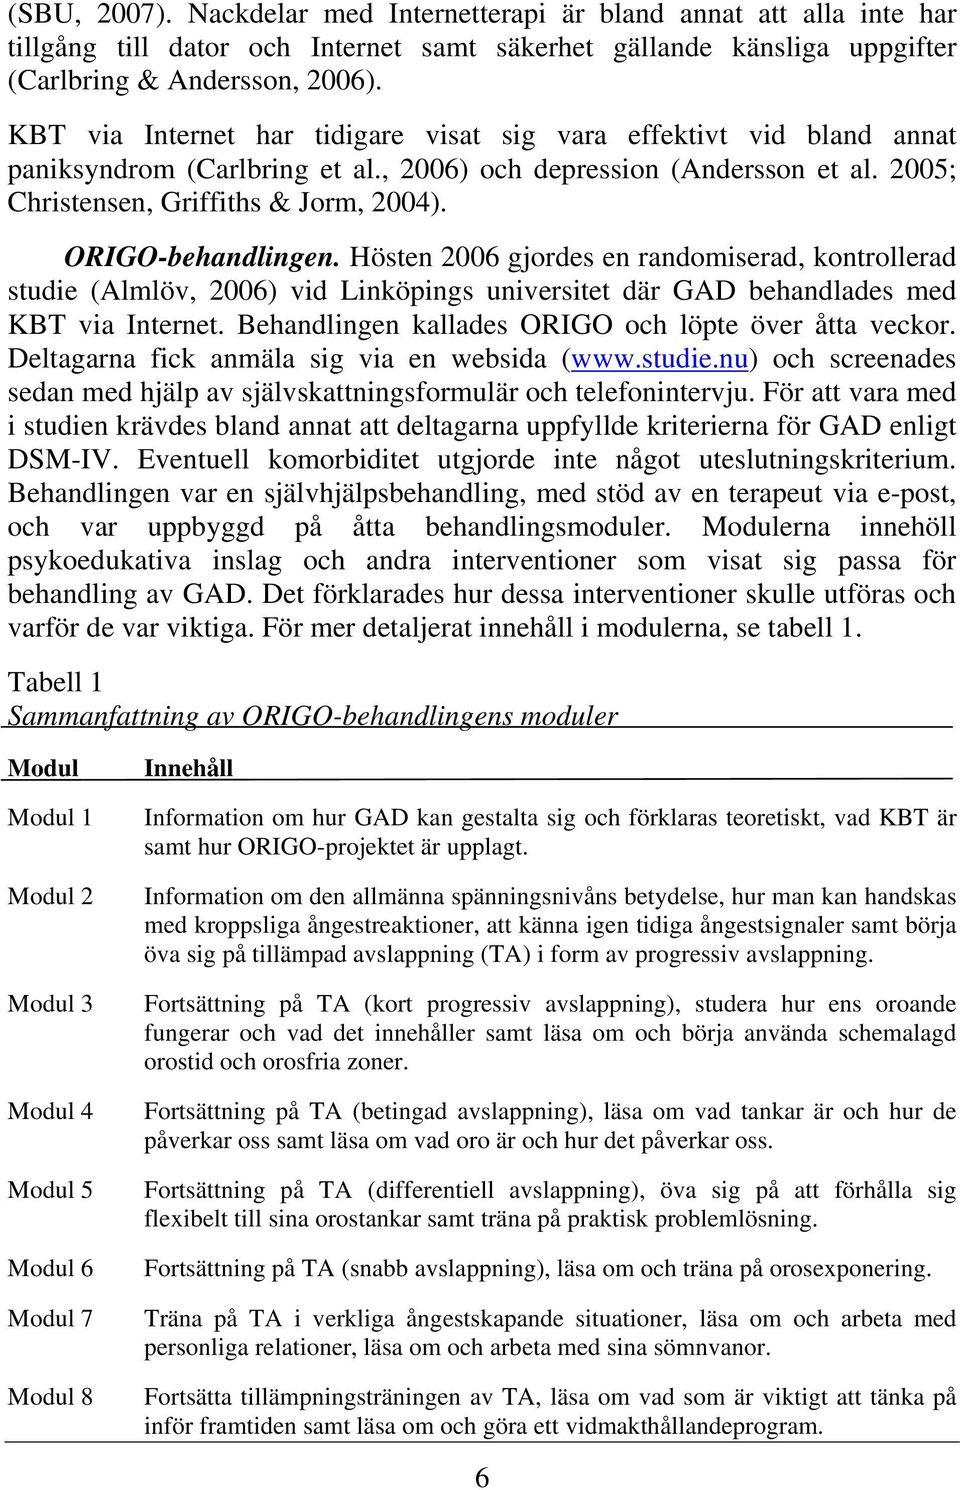 ORIGO-behandlingen. Hösten 2006 gjordes en randomiserad, kontrollerad studie (Almlöv, 2006) vid Linköpings universitet där GAD behandlades med KBT via Internet.